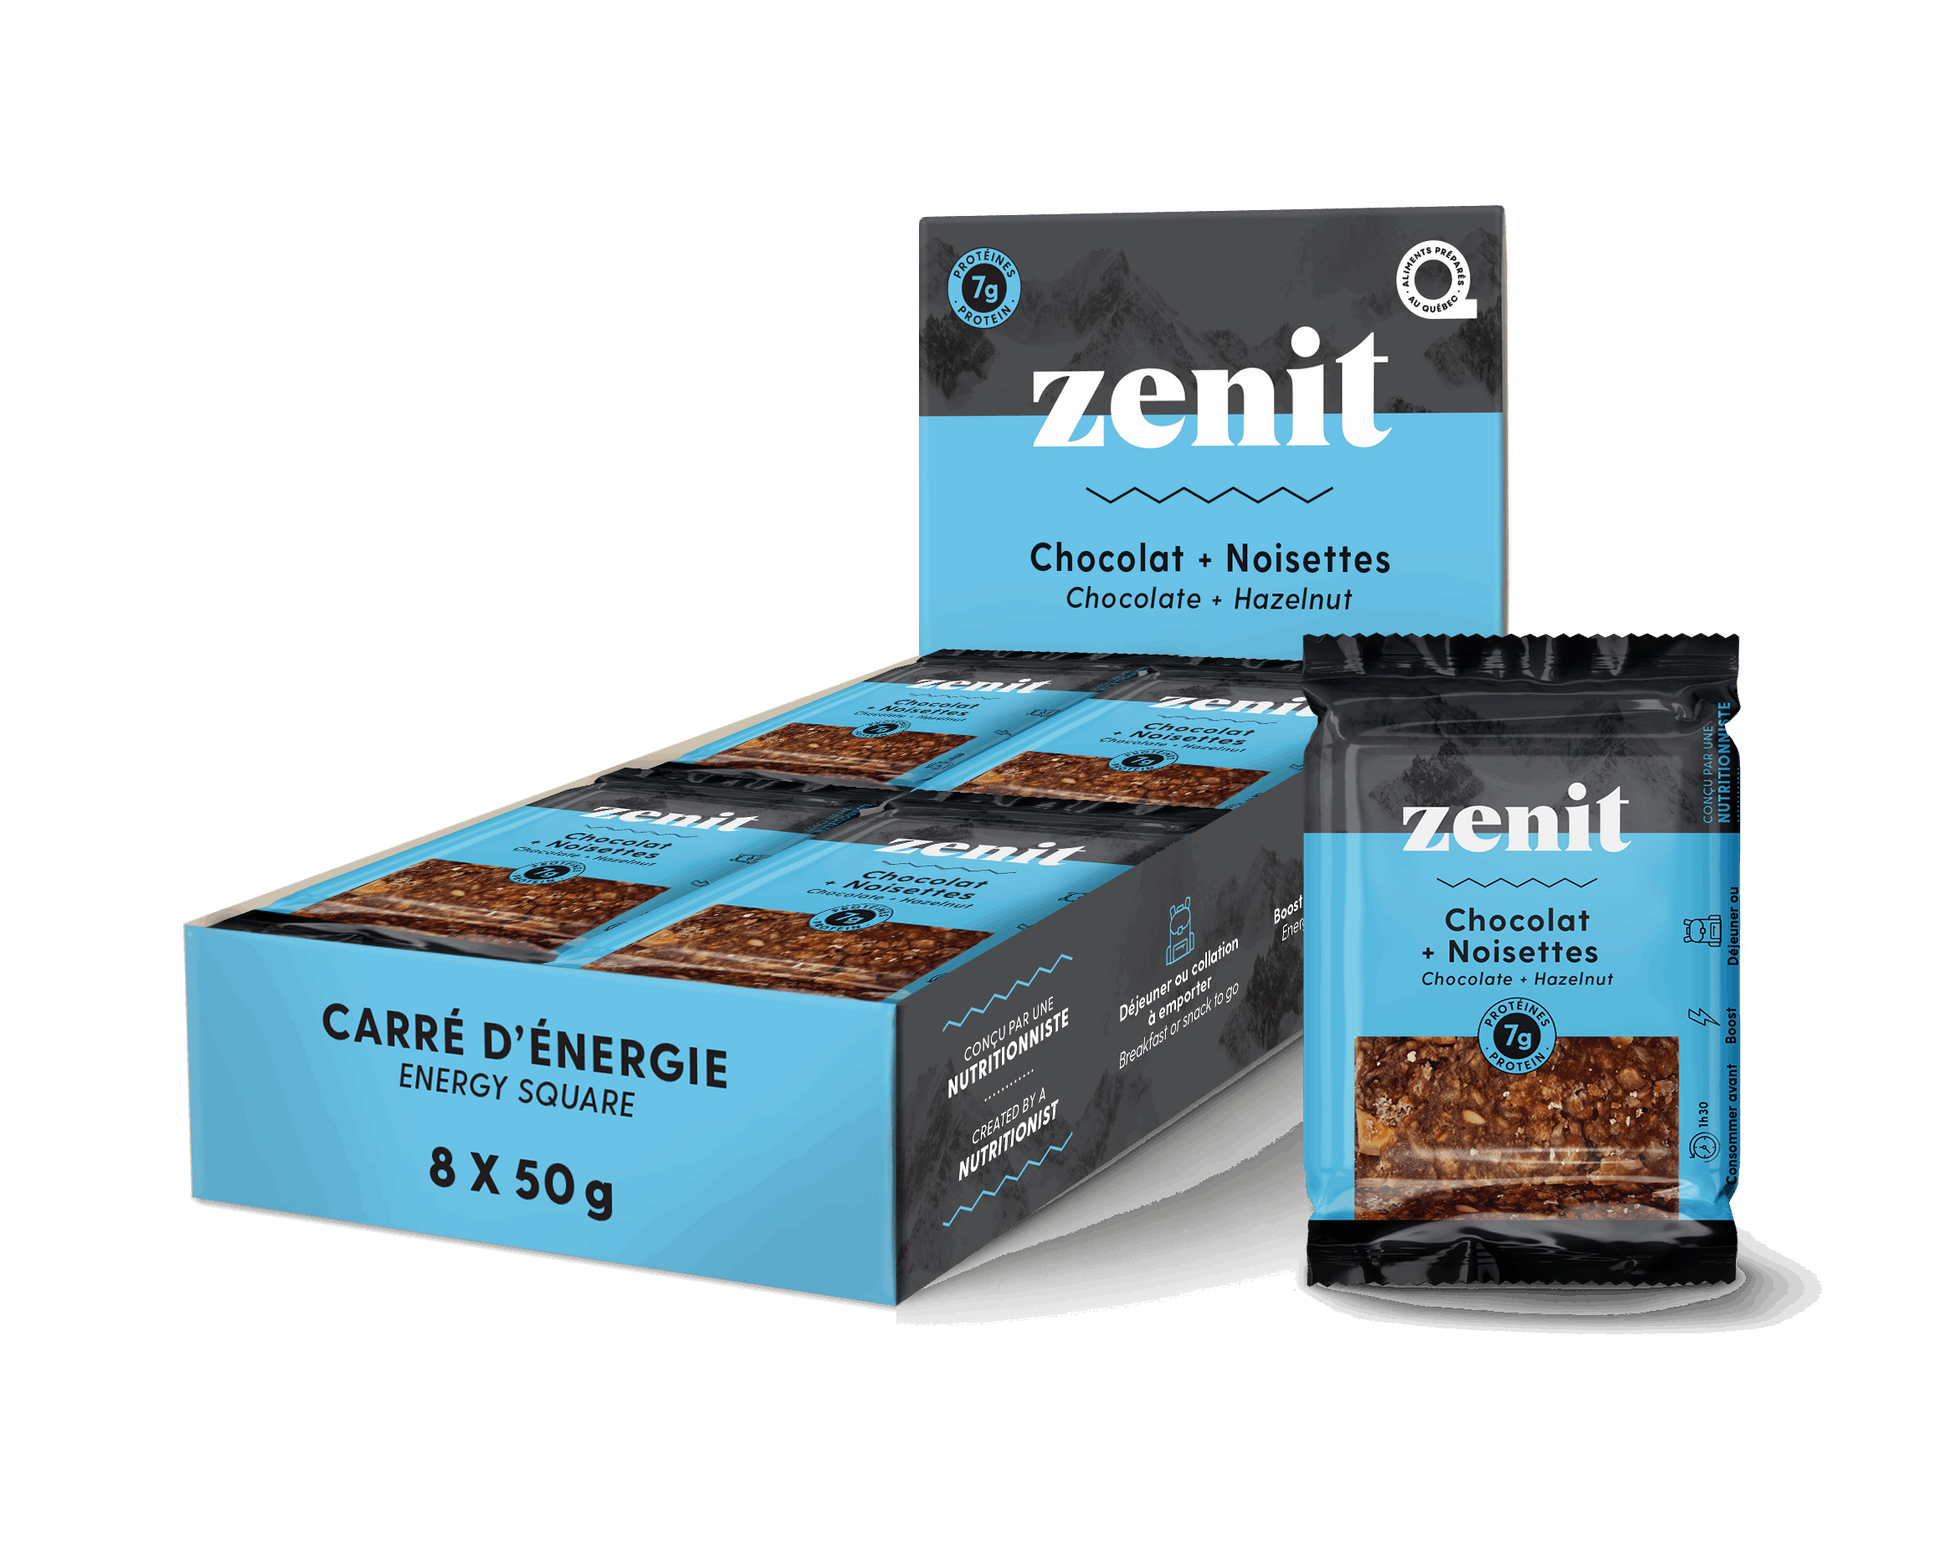 Zenit | Chocolate and Hazelnut Energy Square